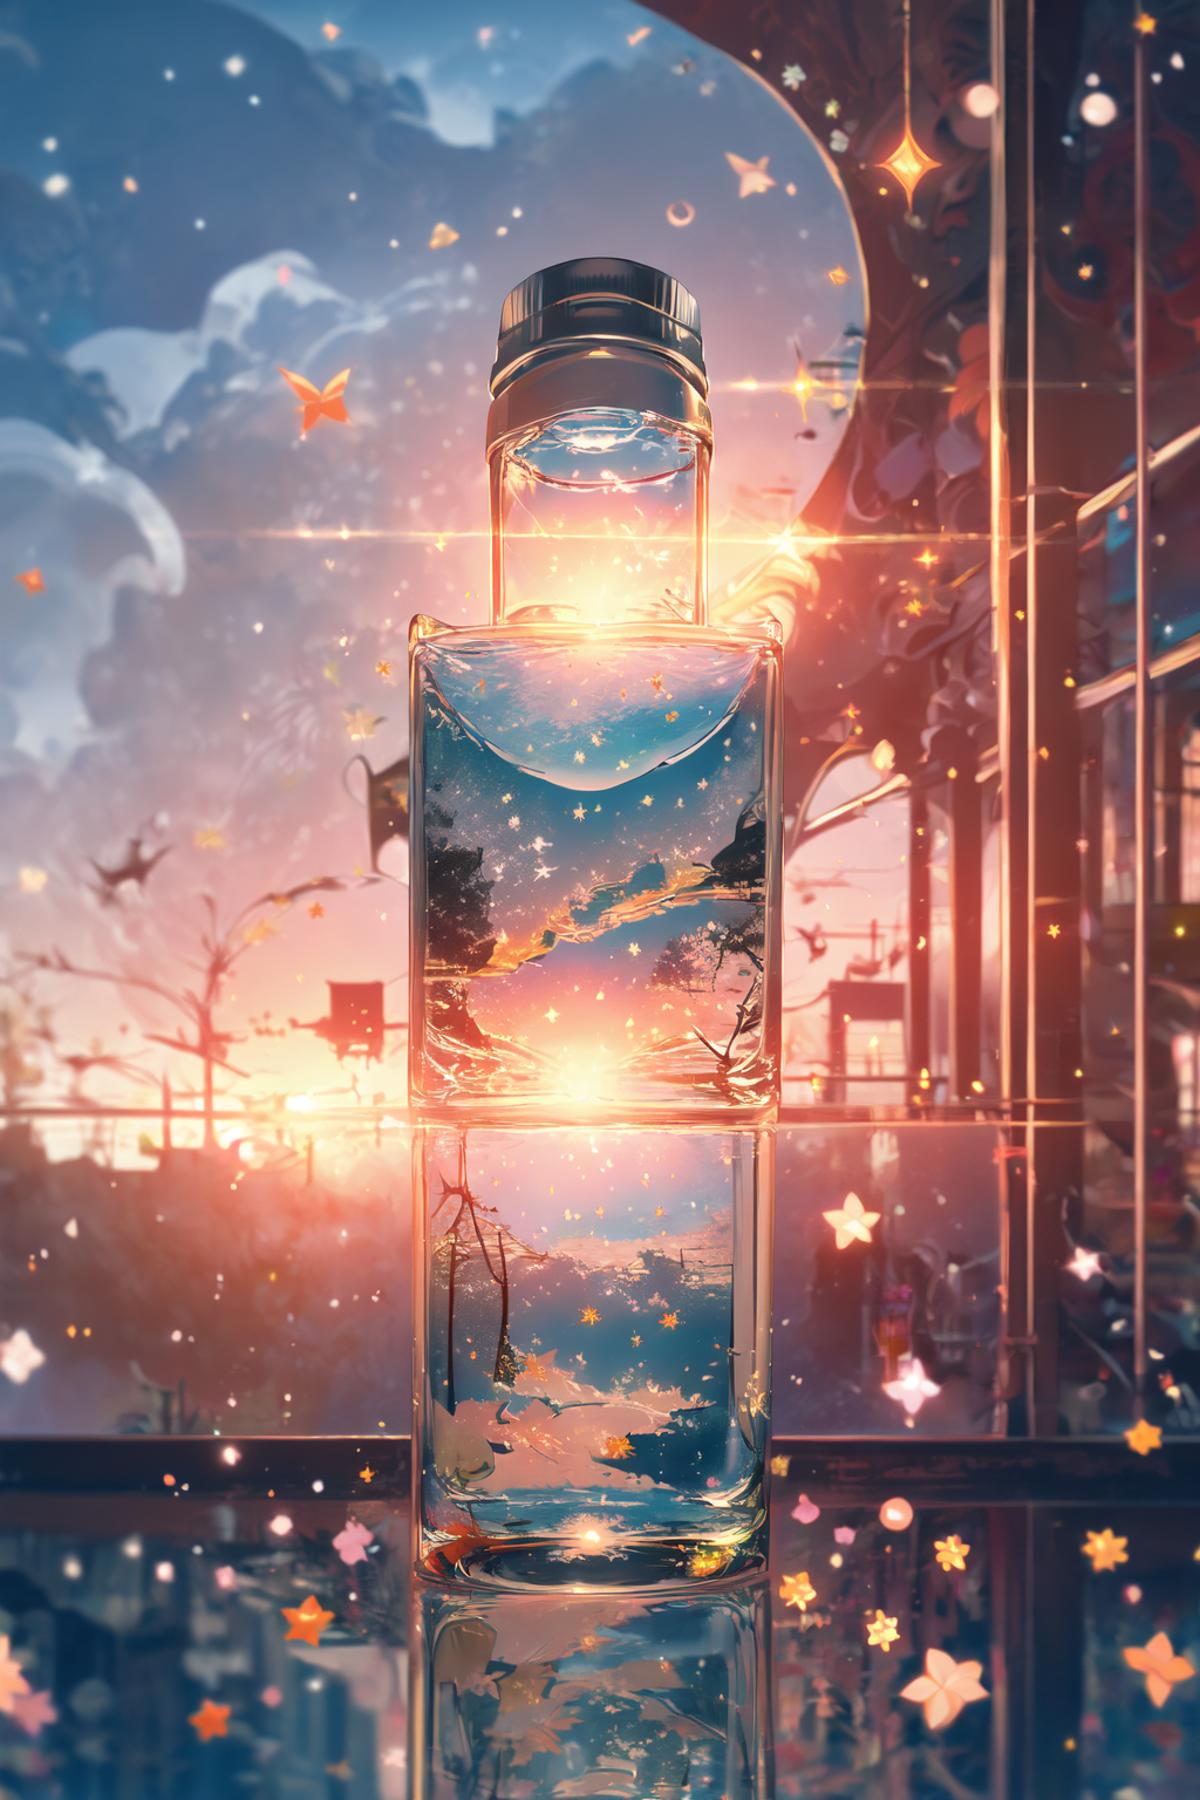 瓶中世界 image by chosen